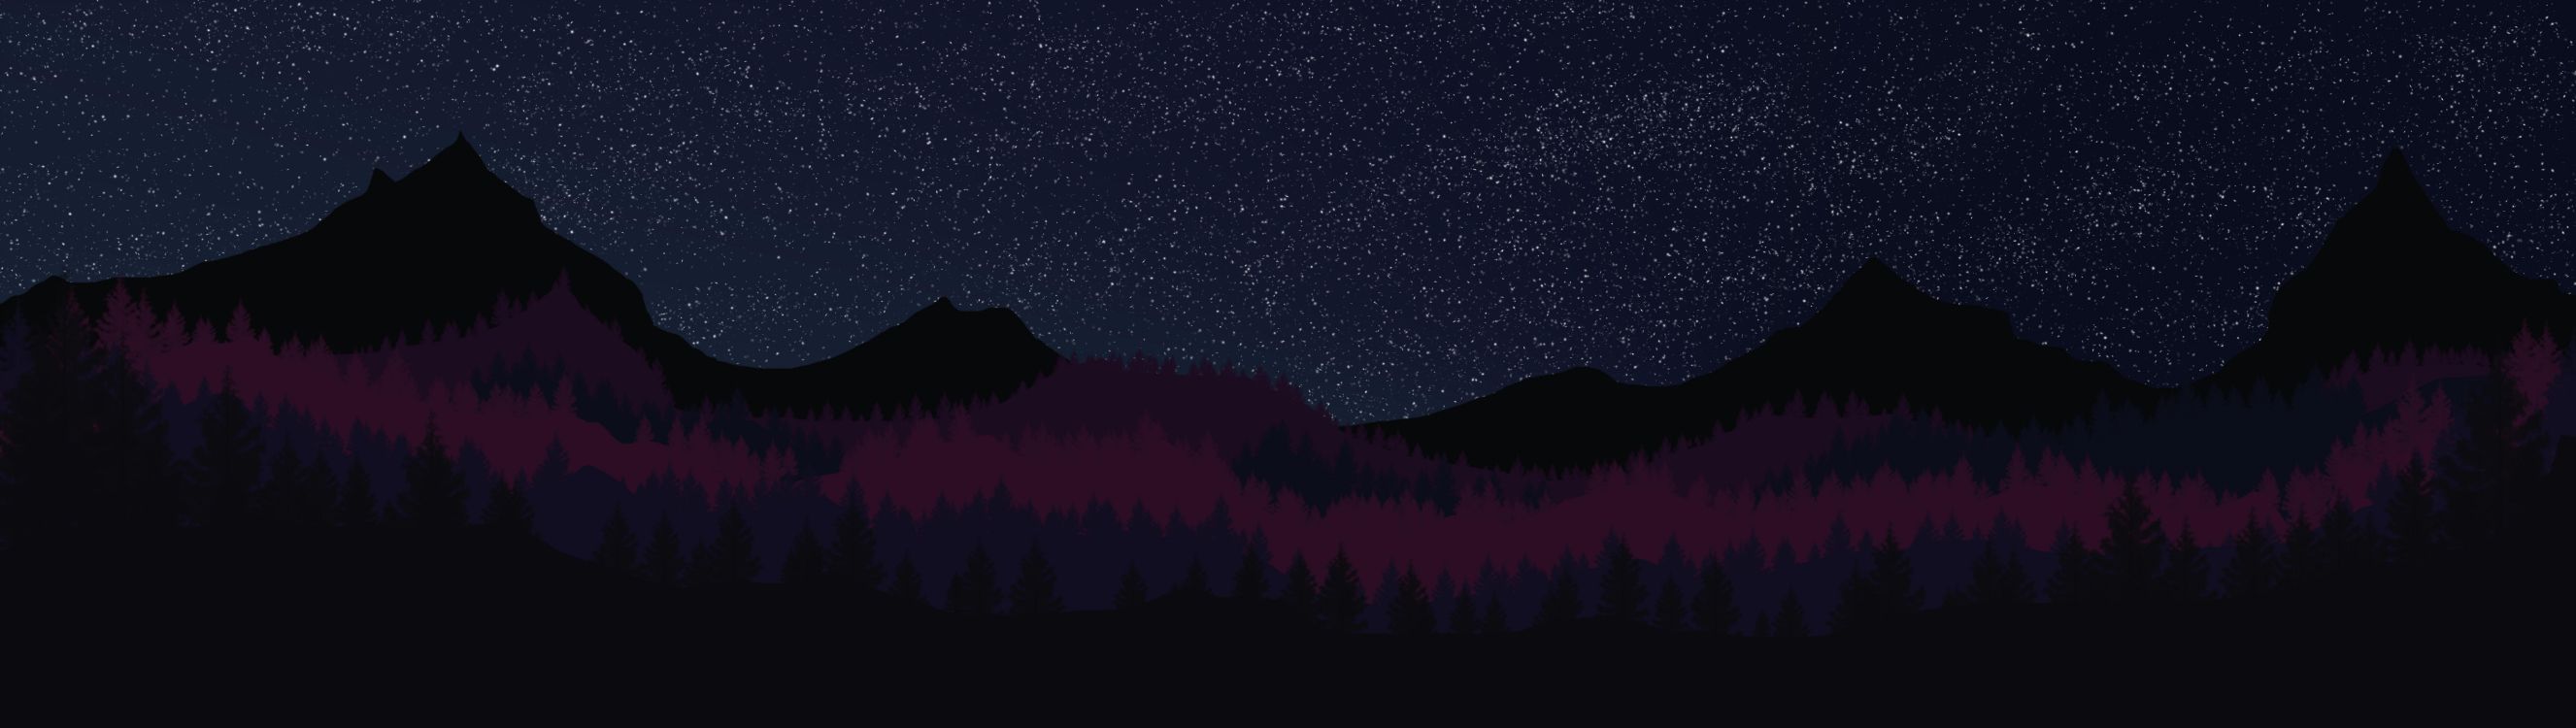 Silhouette D'arbres Sous la Nuit Étoilée. Wallpaper in 12000x3392 Resolution